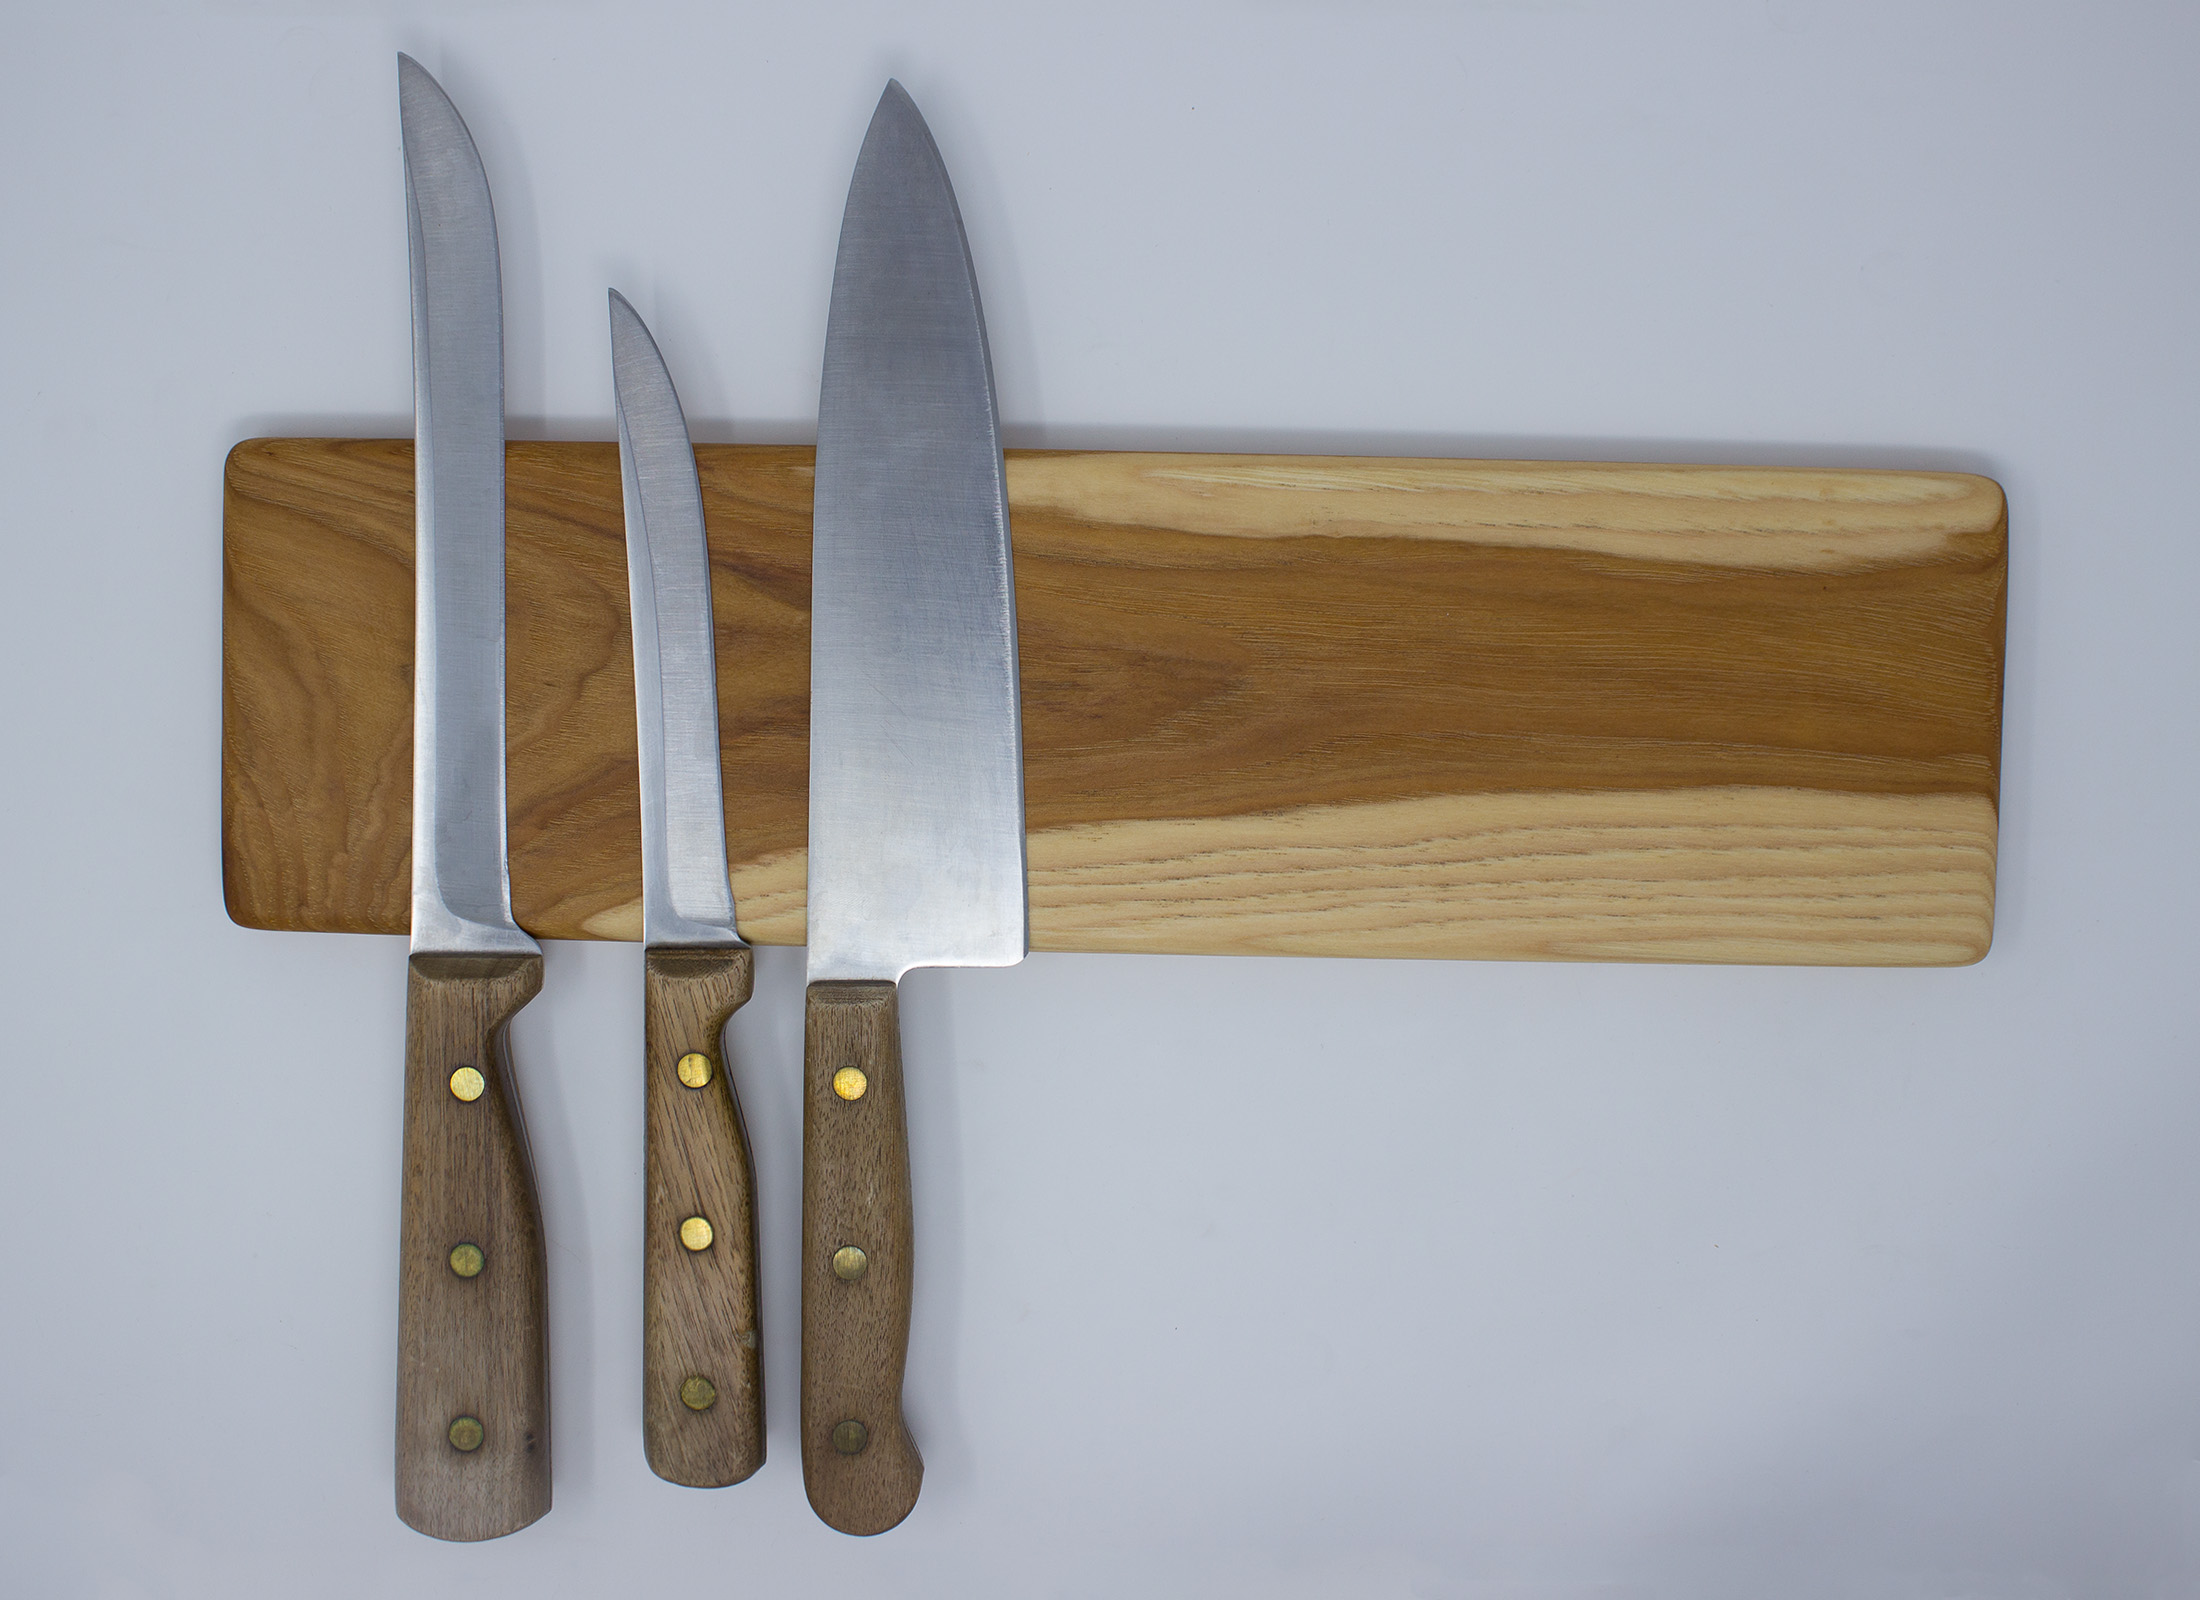 https://www.rockfordwoodcrafts.com/wp-content/uploads/Hickory-Magnetic-Knife-Holder-Front-with-Knives.jpg